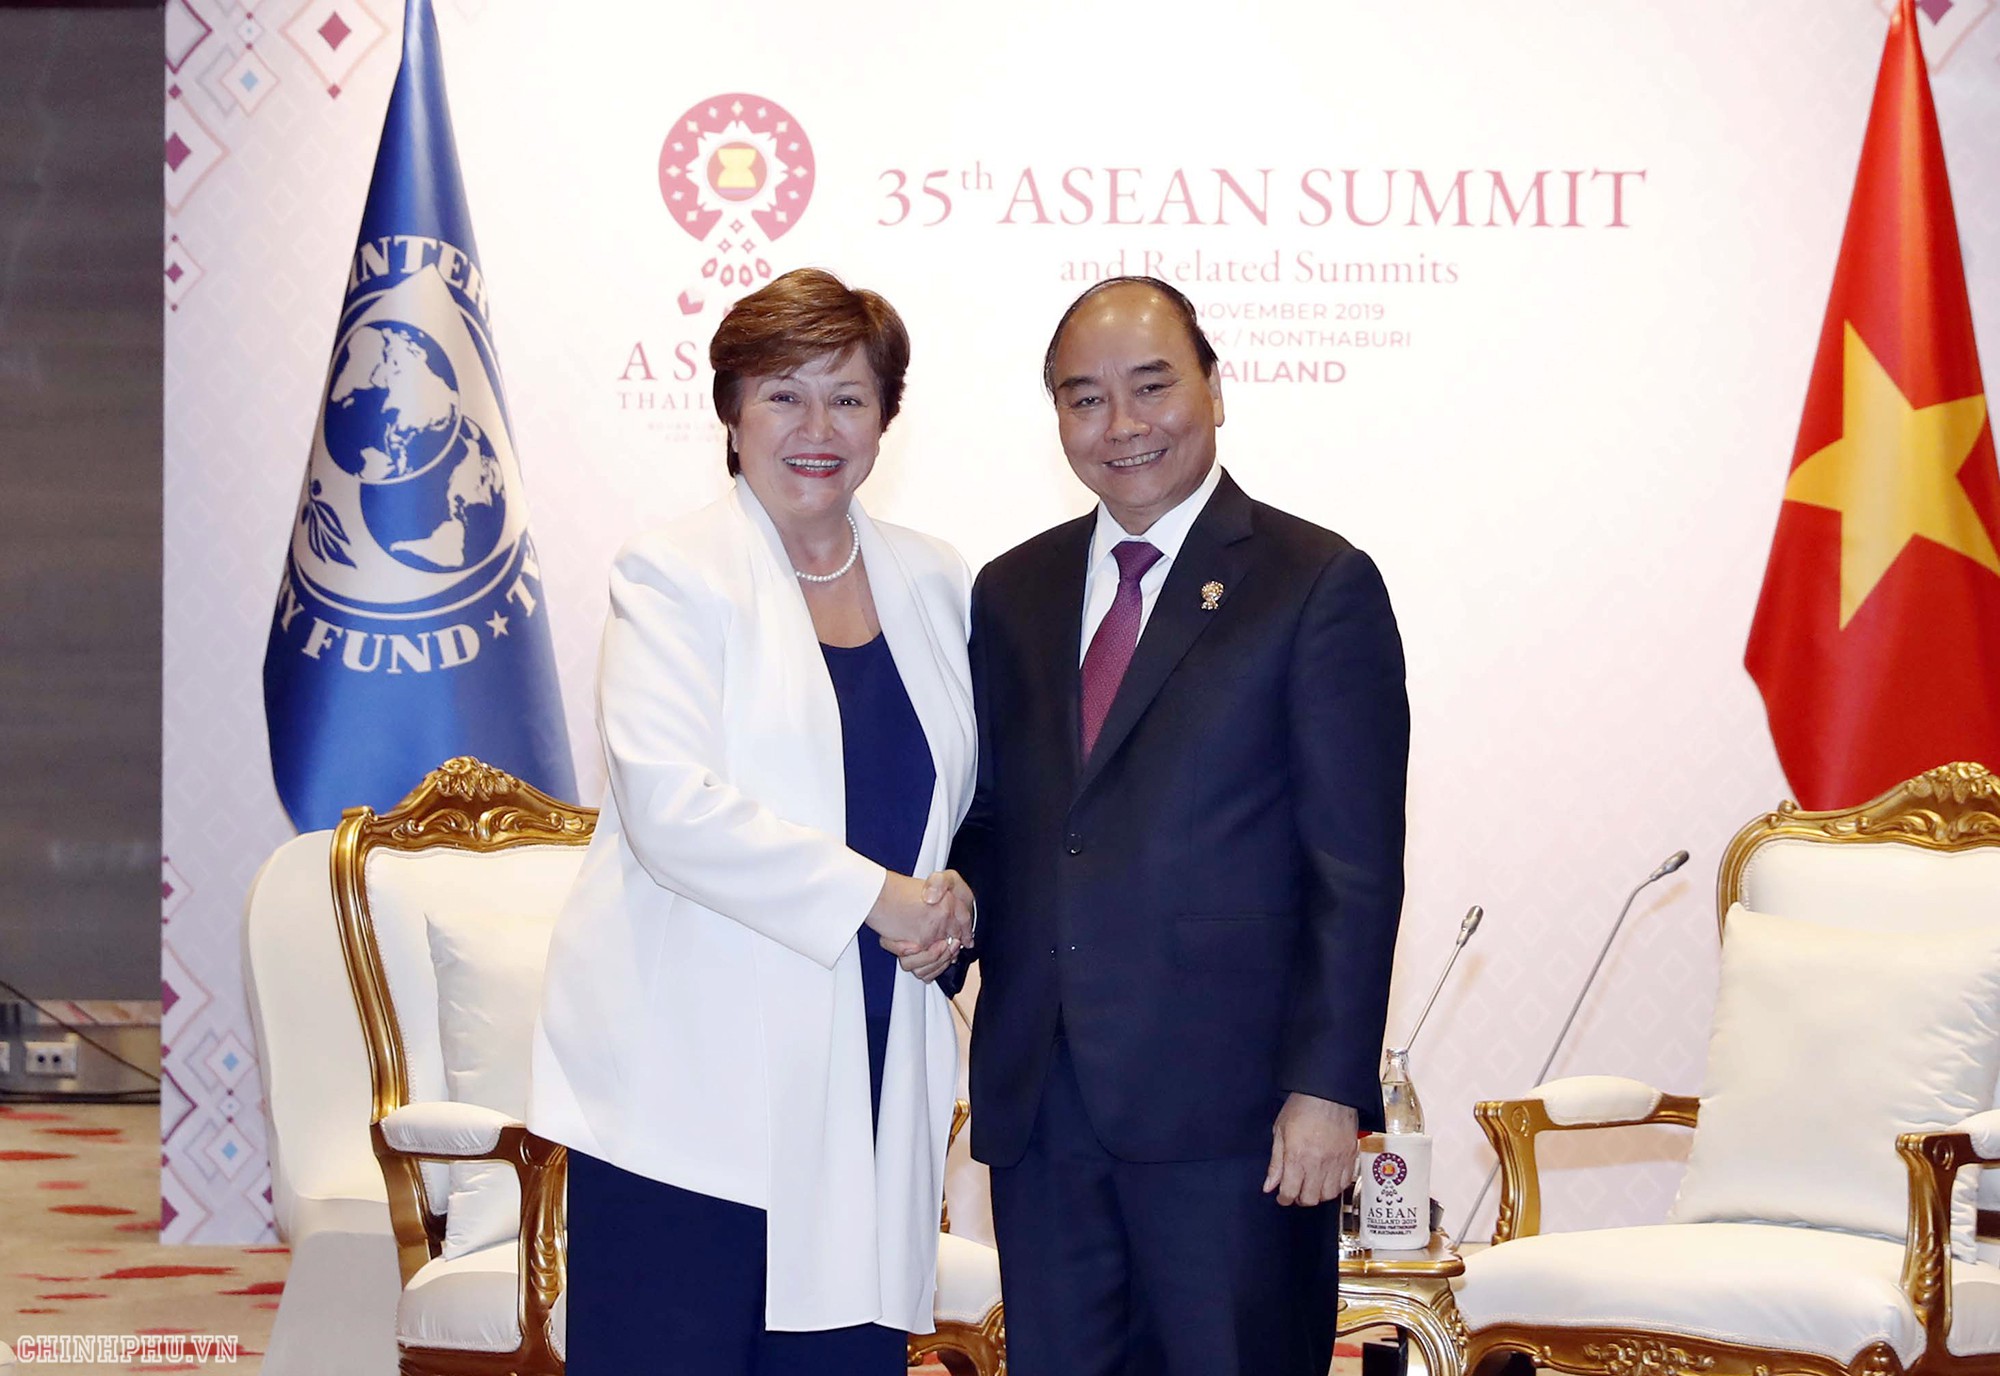 Chùm ảnh: Thủ tướng dự Hội nghị cấp cao ASEAN và gặp lãnh đạo các nước - Ảnh 9.